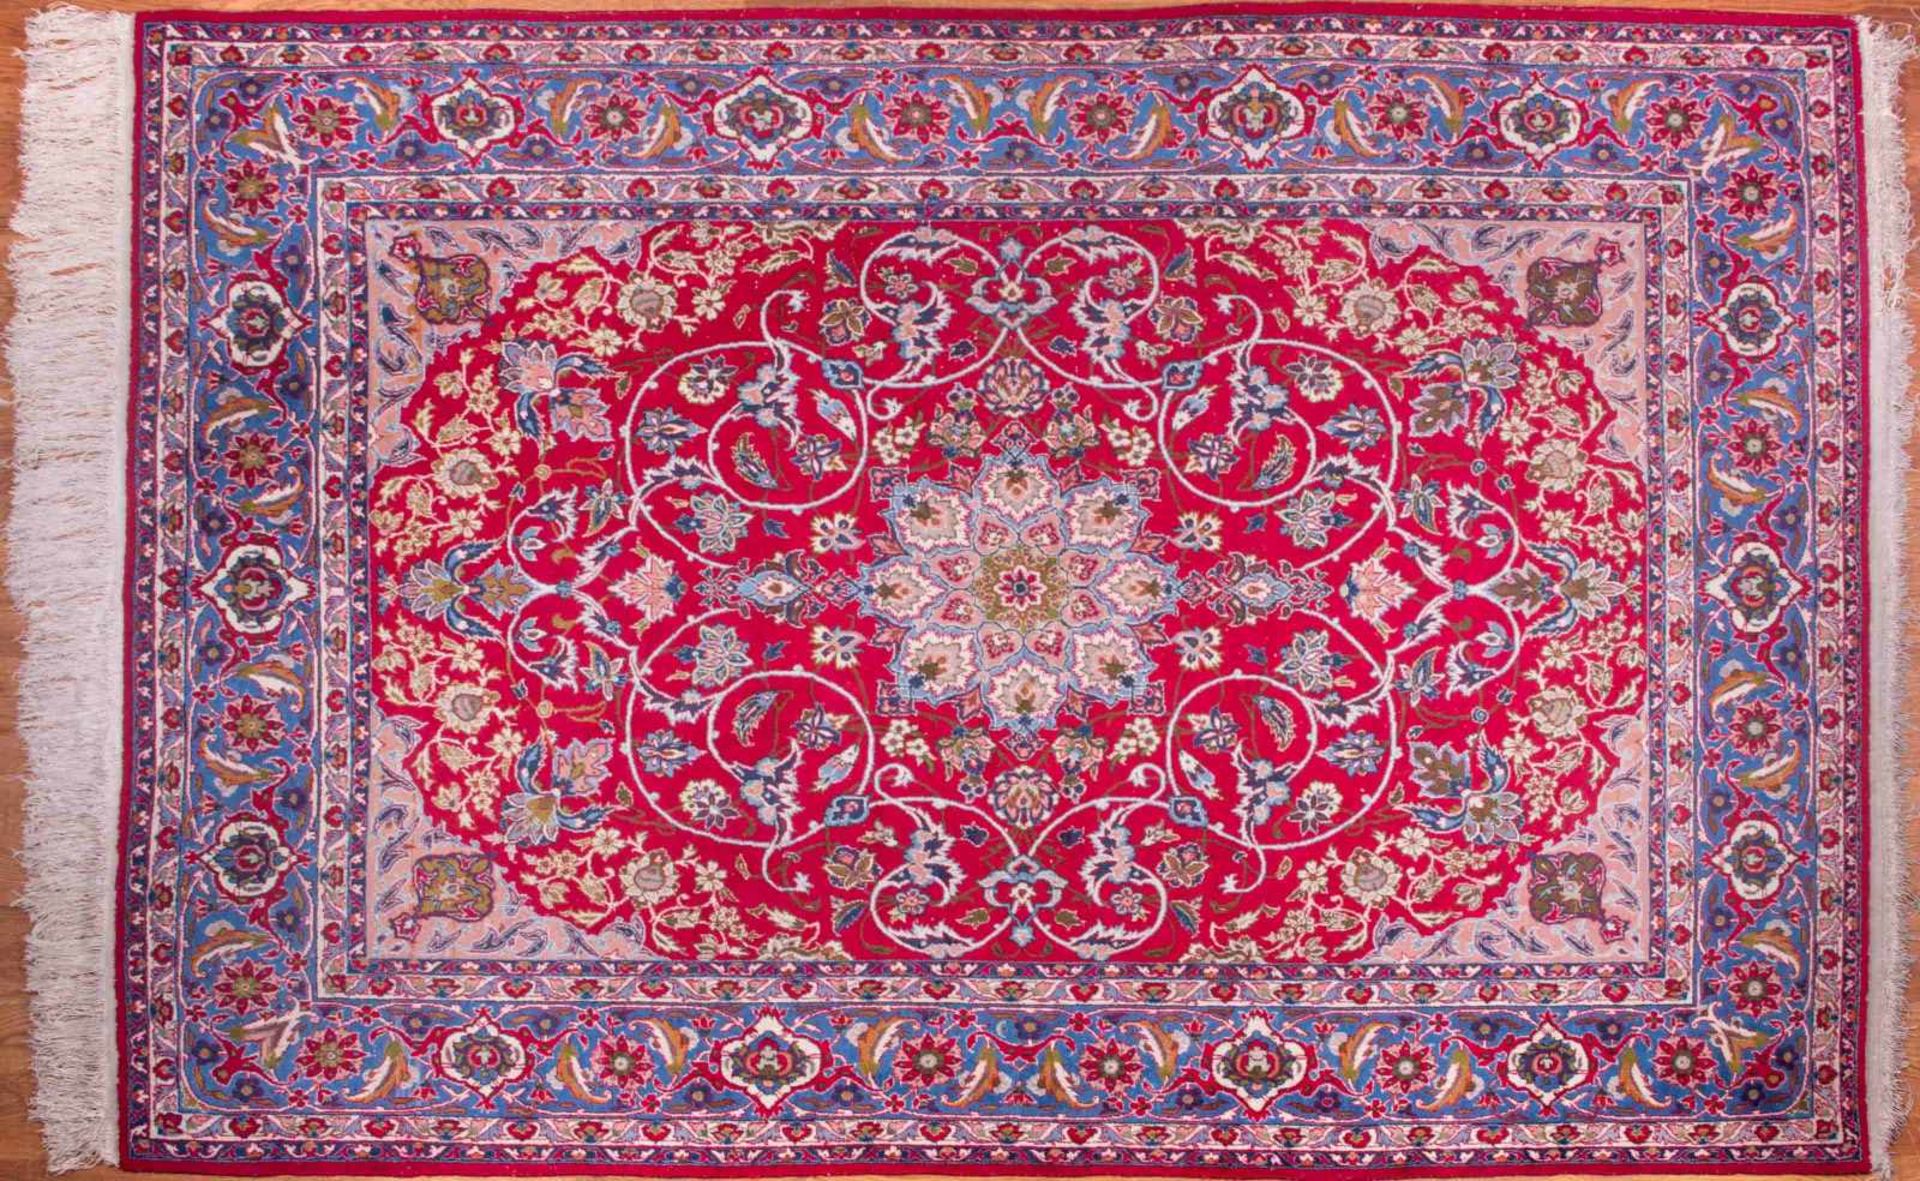 alter orientalischer Teppich / old oriental carpet handgeknüpt, 315 cm x 210 cm tied by hand, 315 cm